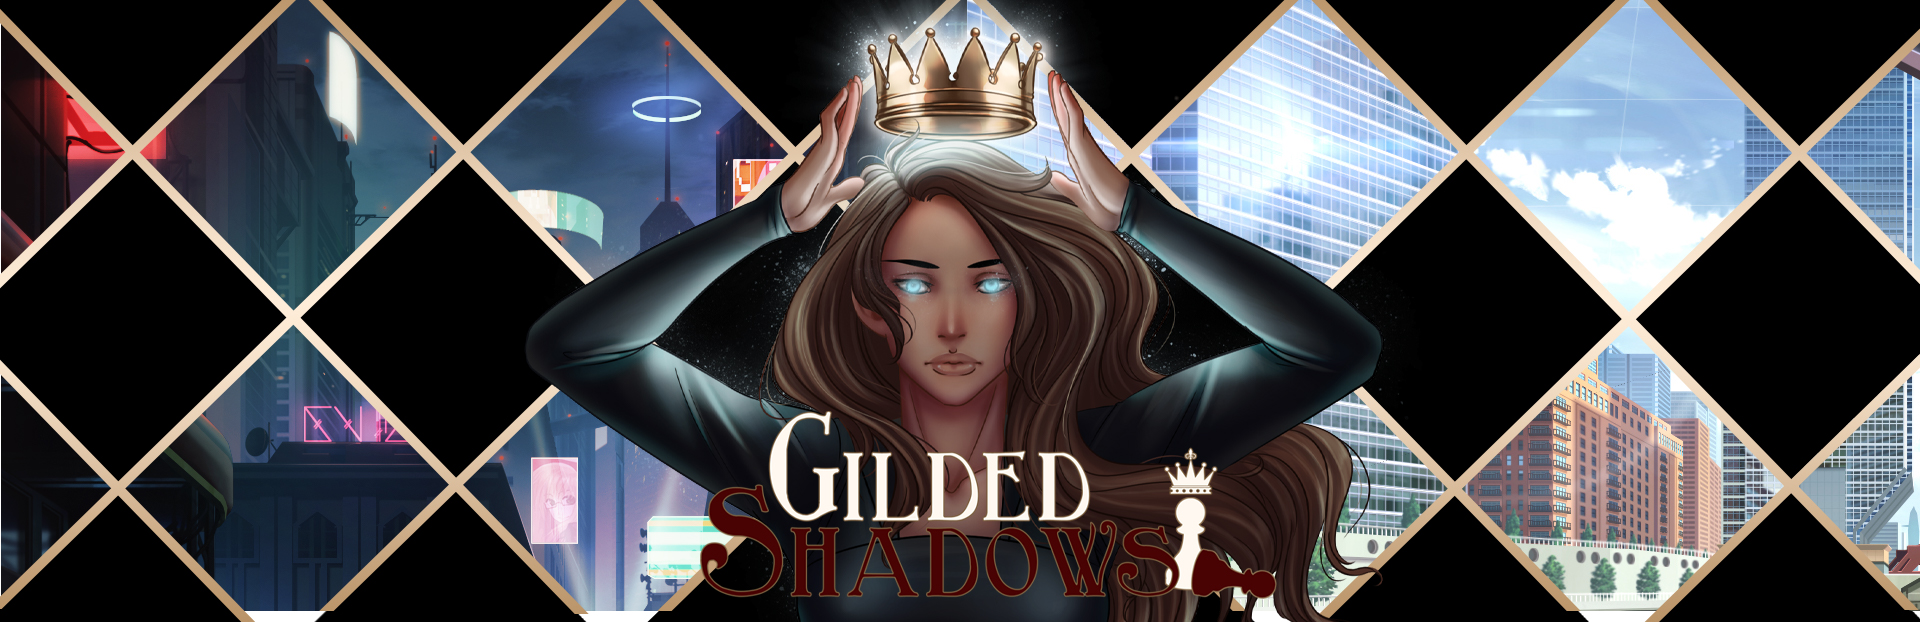 Gilded Shadows